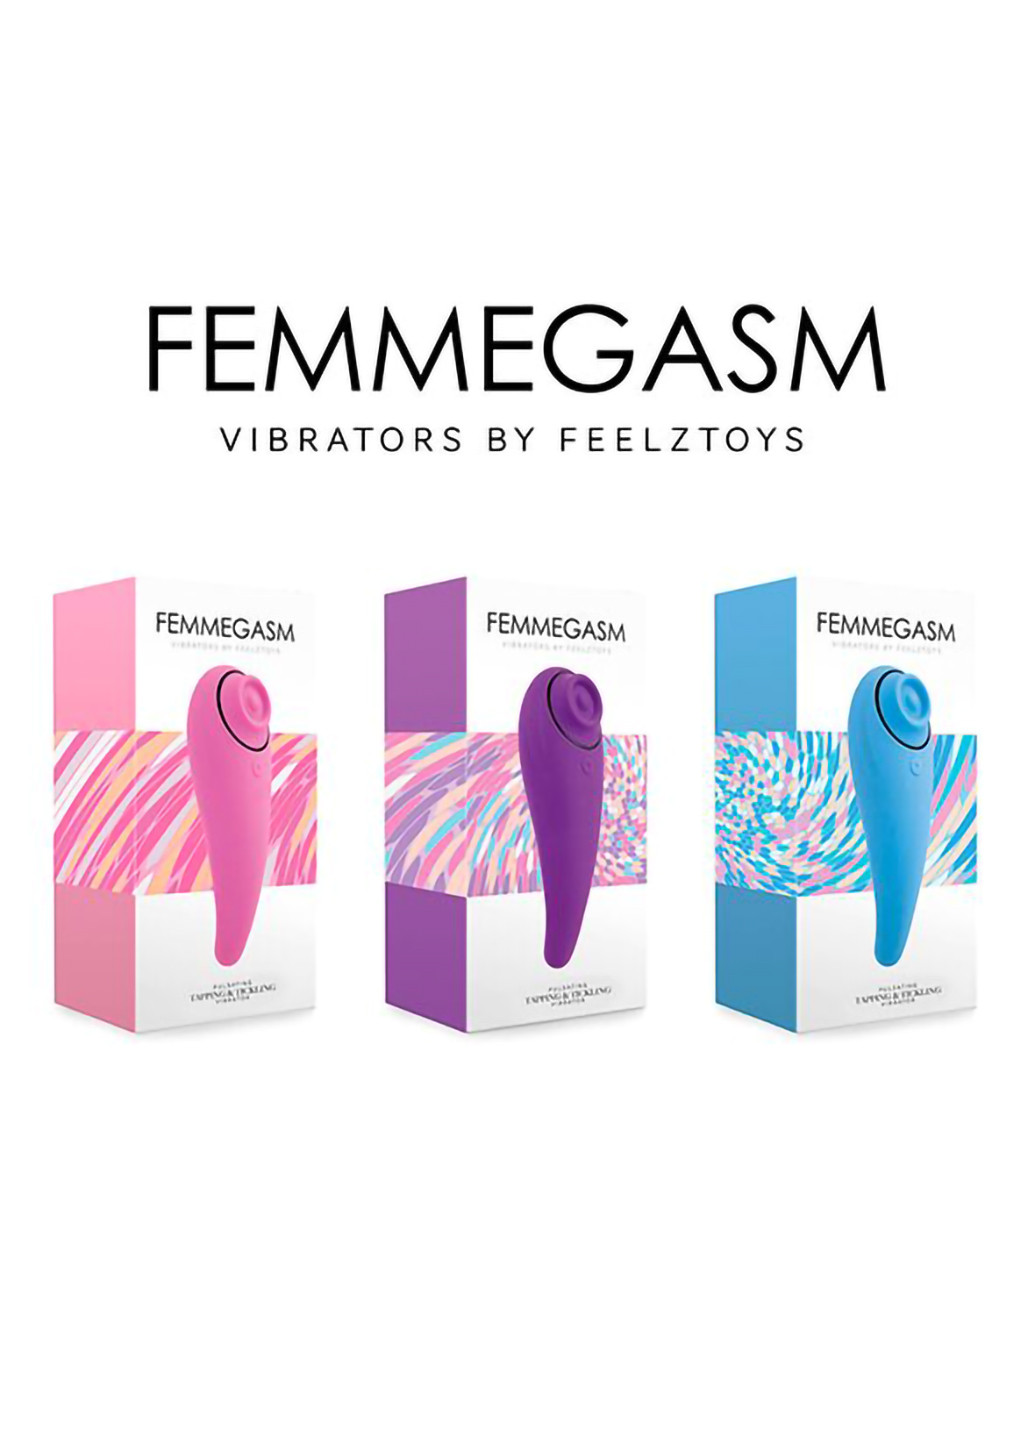 Пульсатор для клитора плюс вибратор - FemmeGasm Tapping & Tickling Vibrator Pink FeelzToys (254152261)